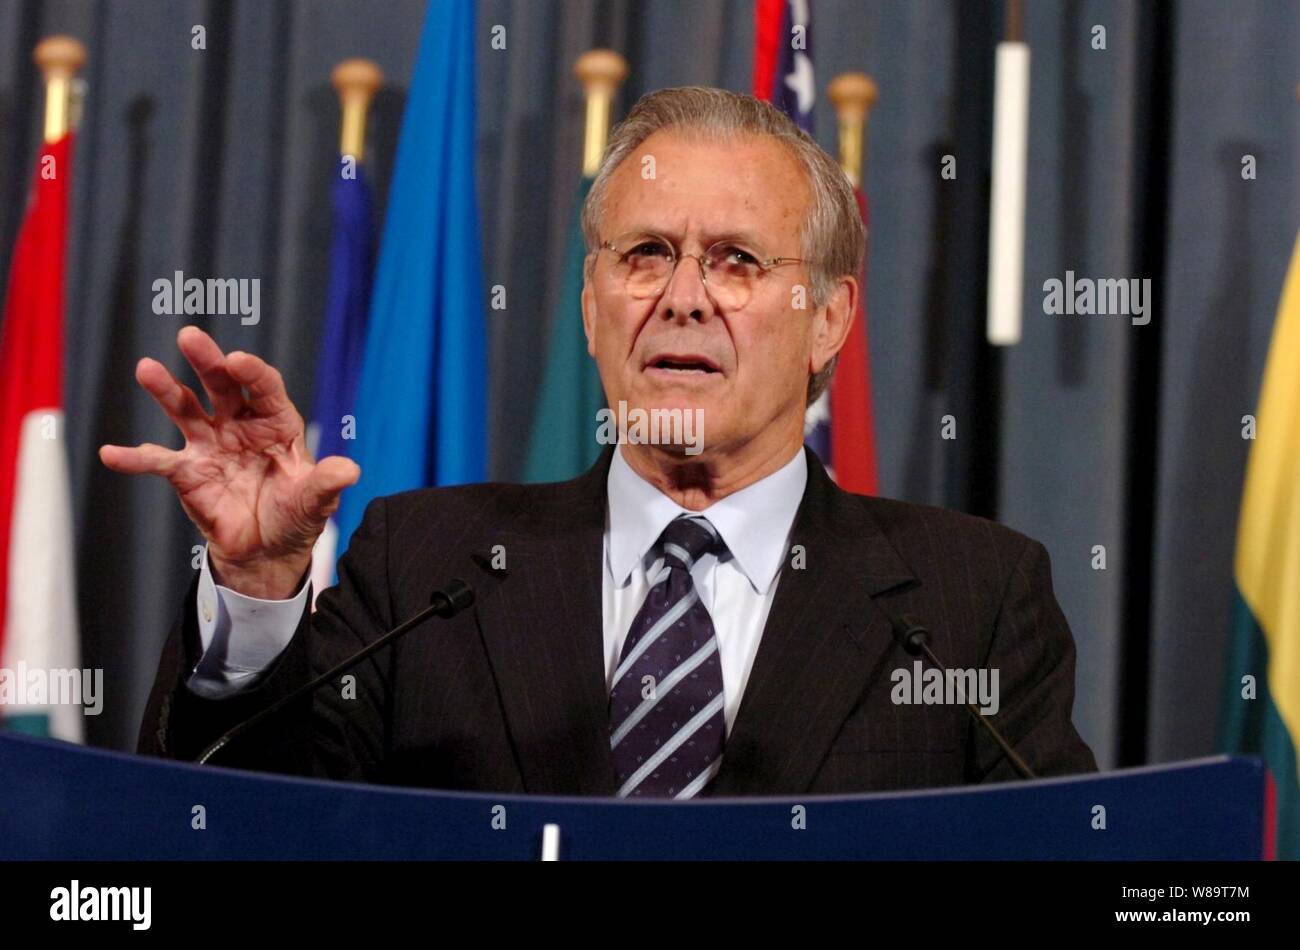 Il Segretario della Difesa Donald H. Rumsfeld parla ai media nel corso di un briefing con la stampa presso l'Organizzazione del Trattato del Nord Atlantico con sede a Bruxelles, Belgio, il 9 giugno 2006. Foto Stock